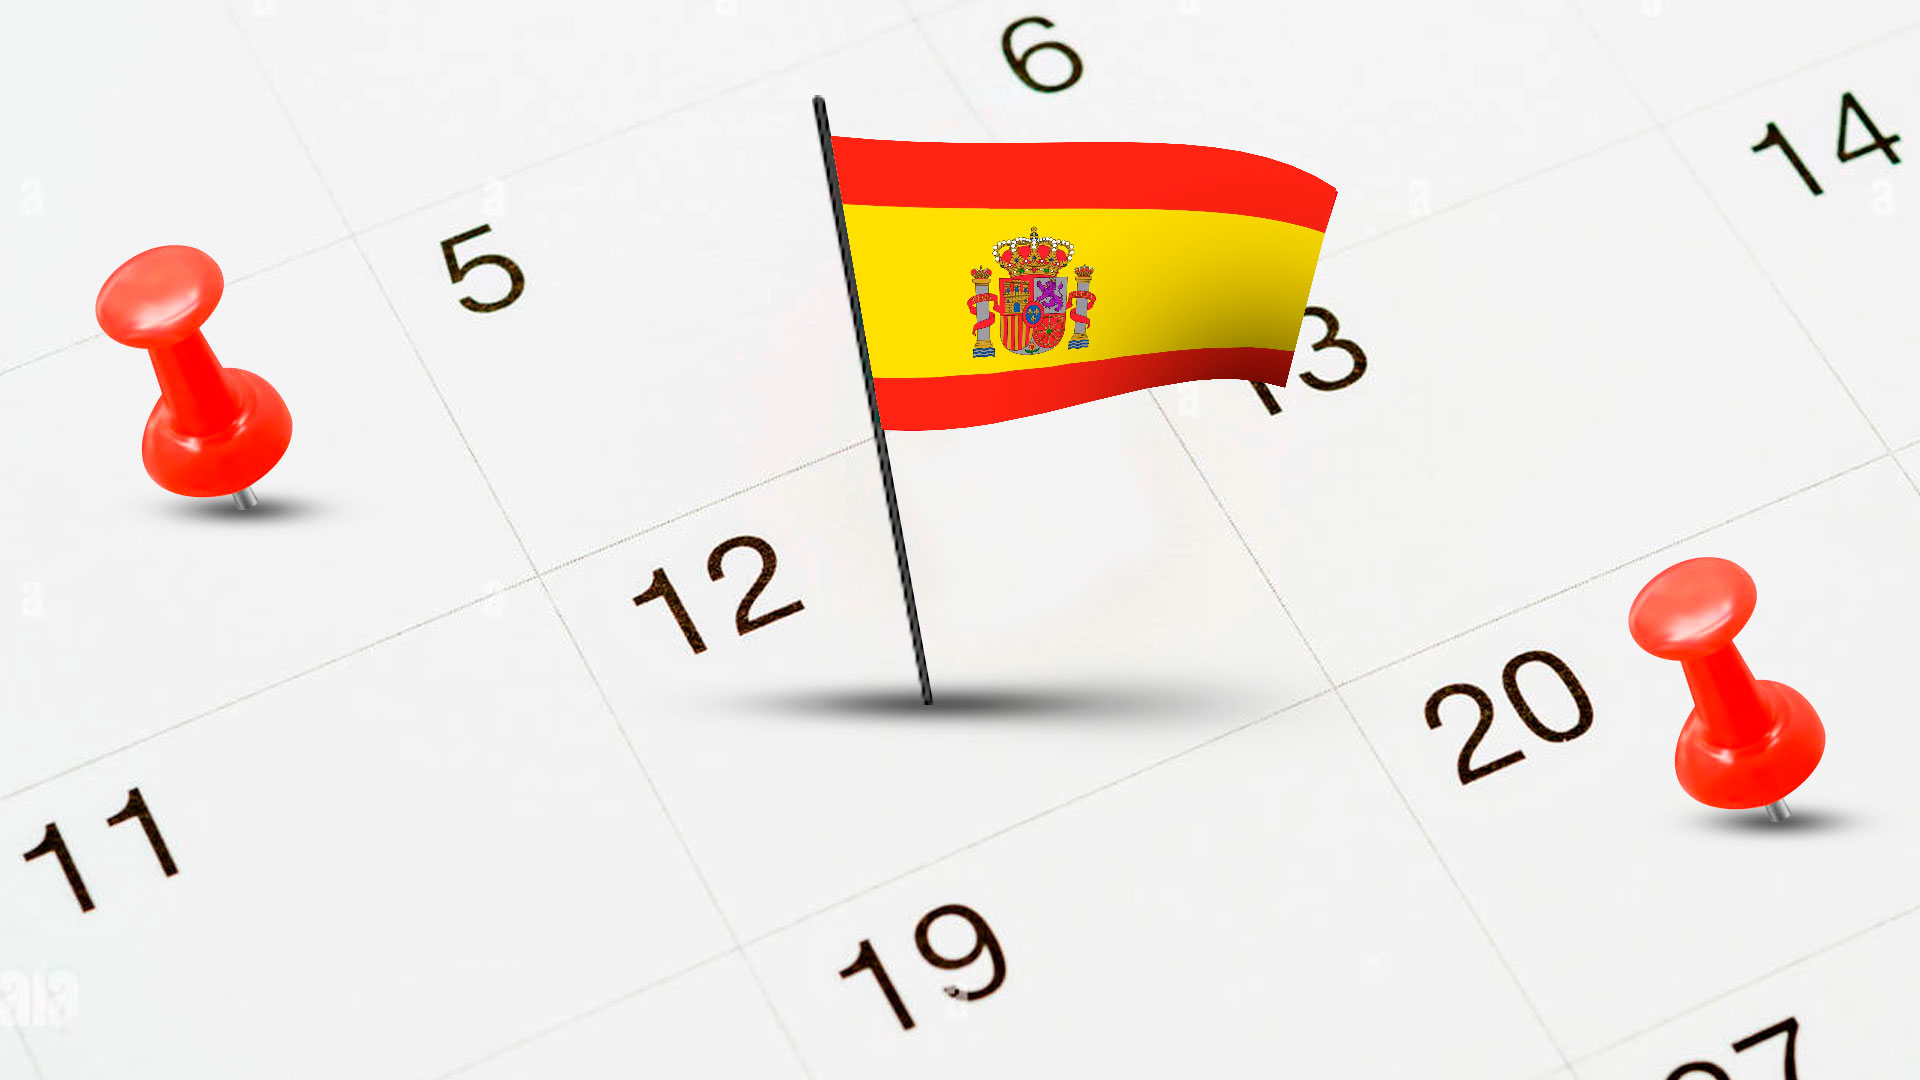 Efemérides de junio en España, fechas y conmemoraciones importantes